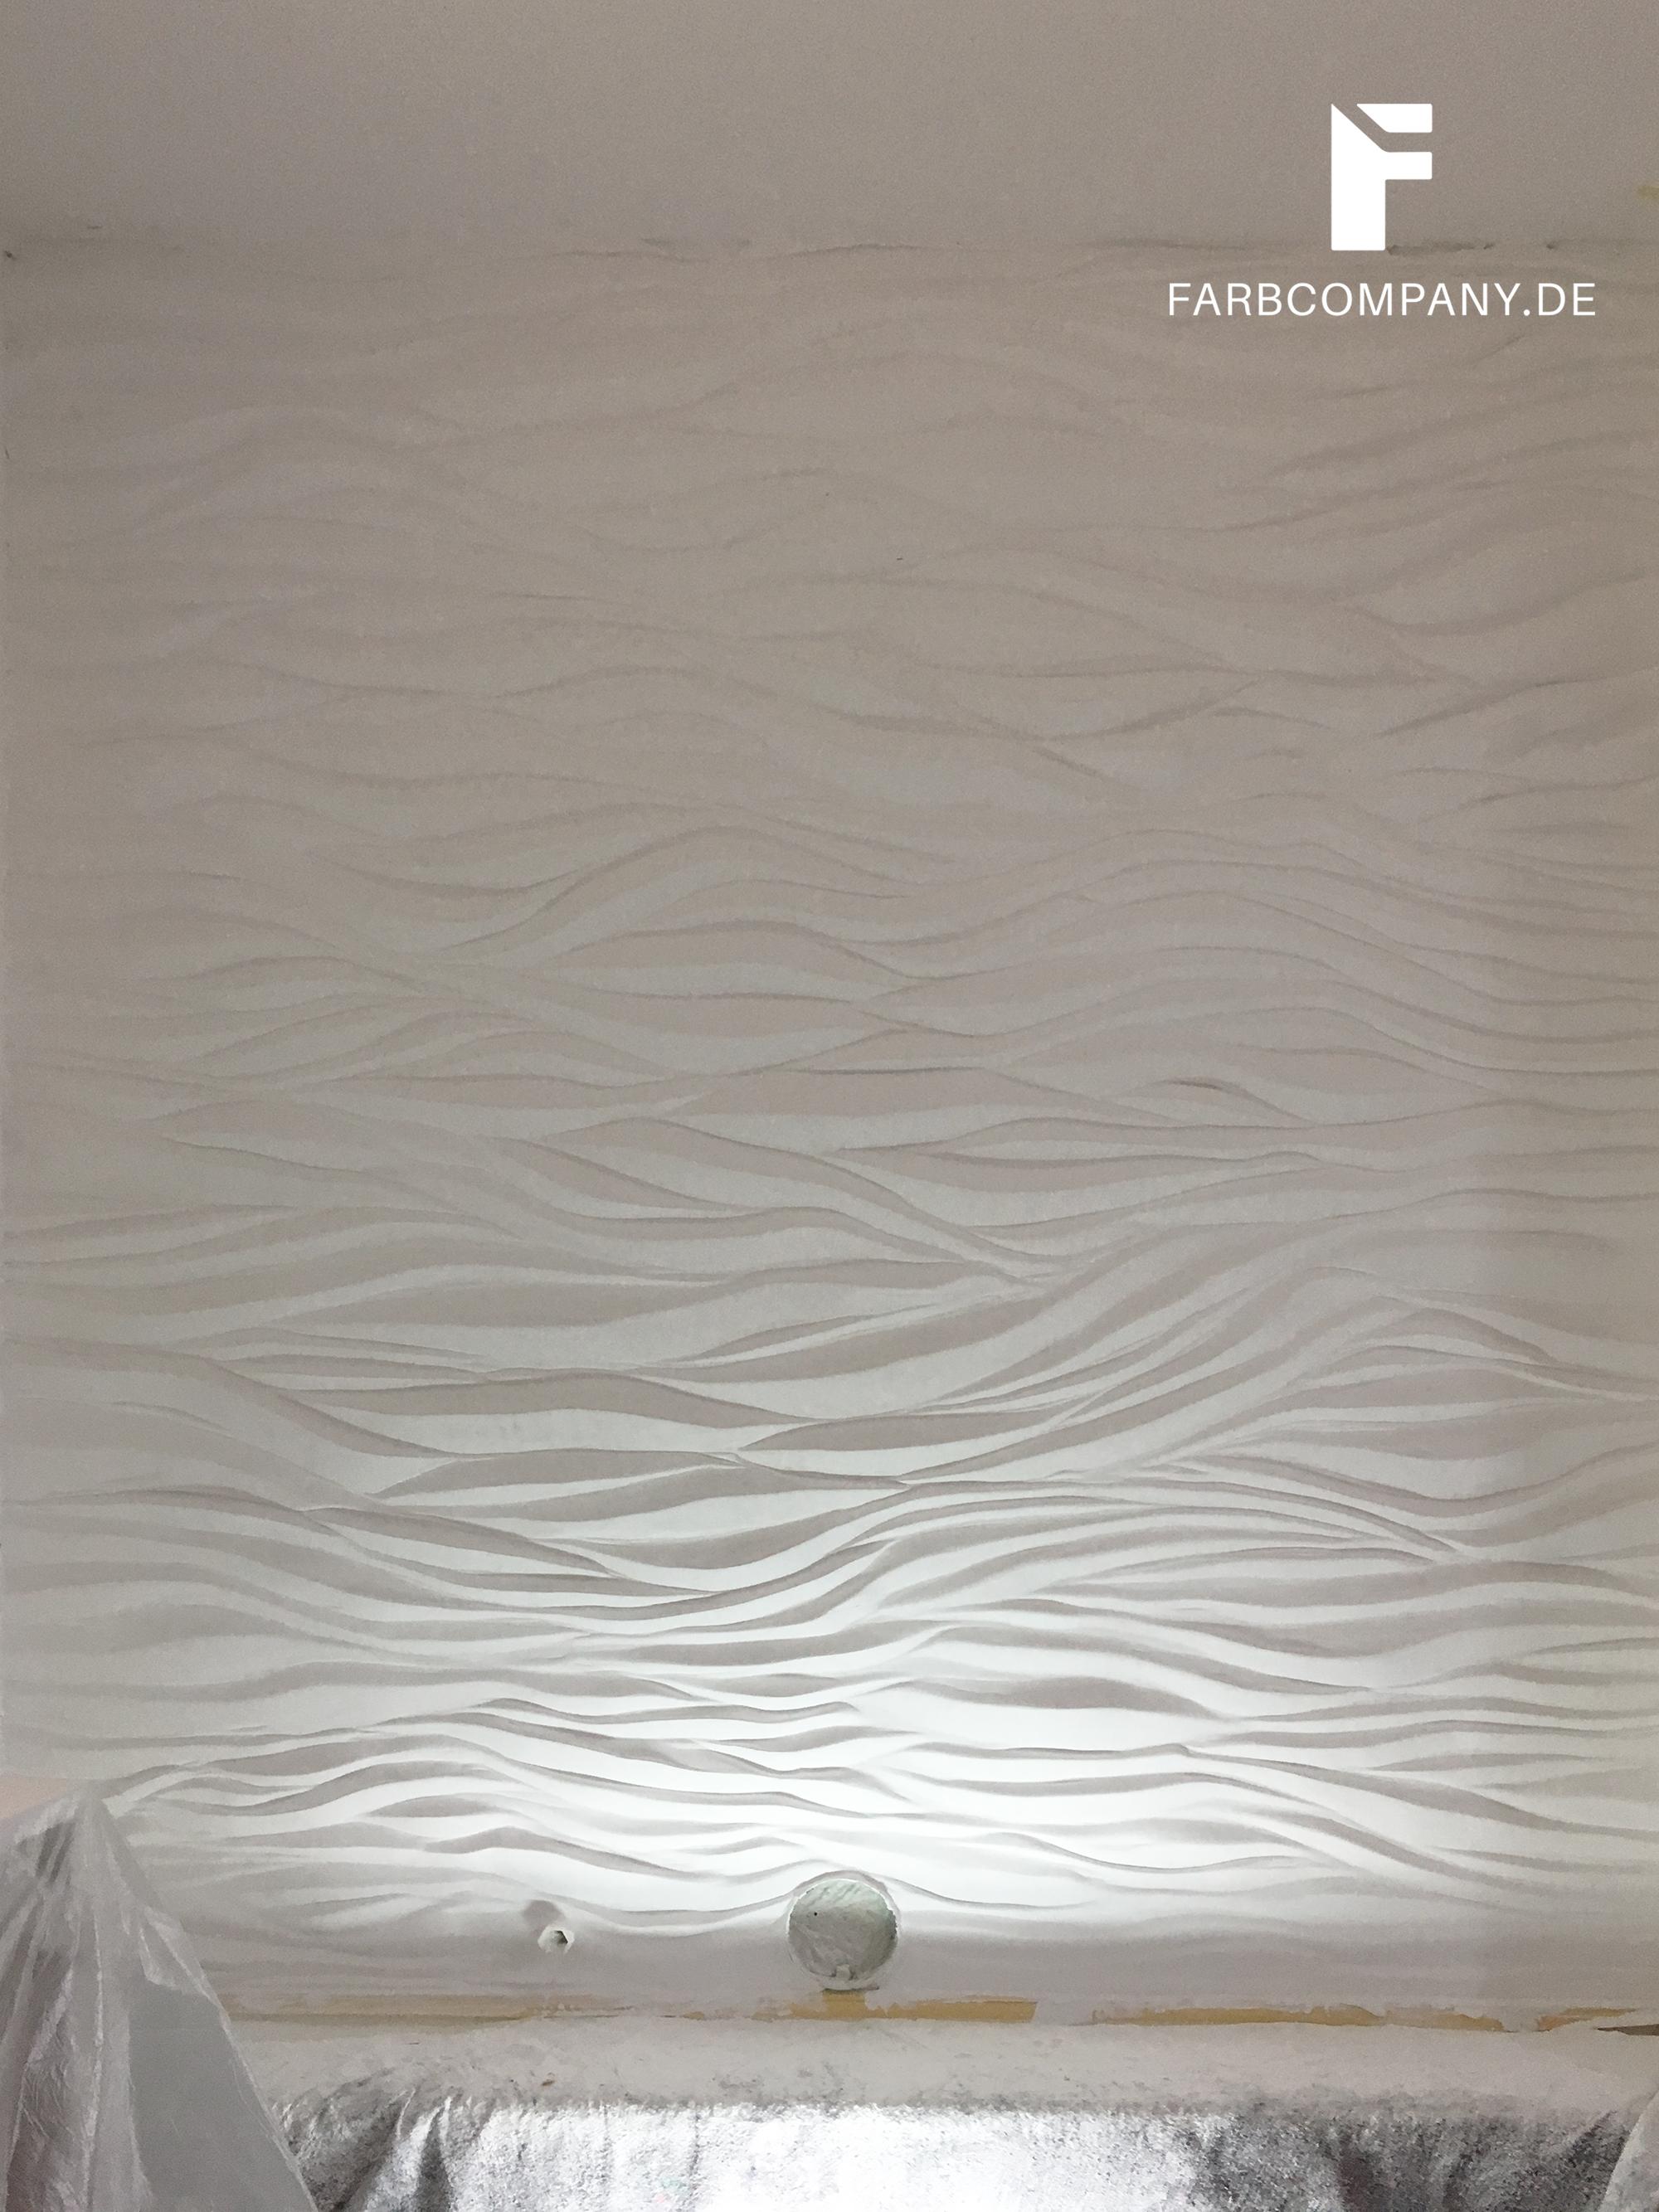 Wellenwand mit Lichteffekten #wandrelief ©Farbcompany